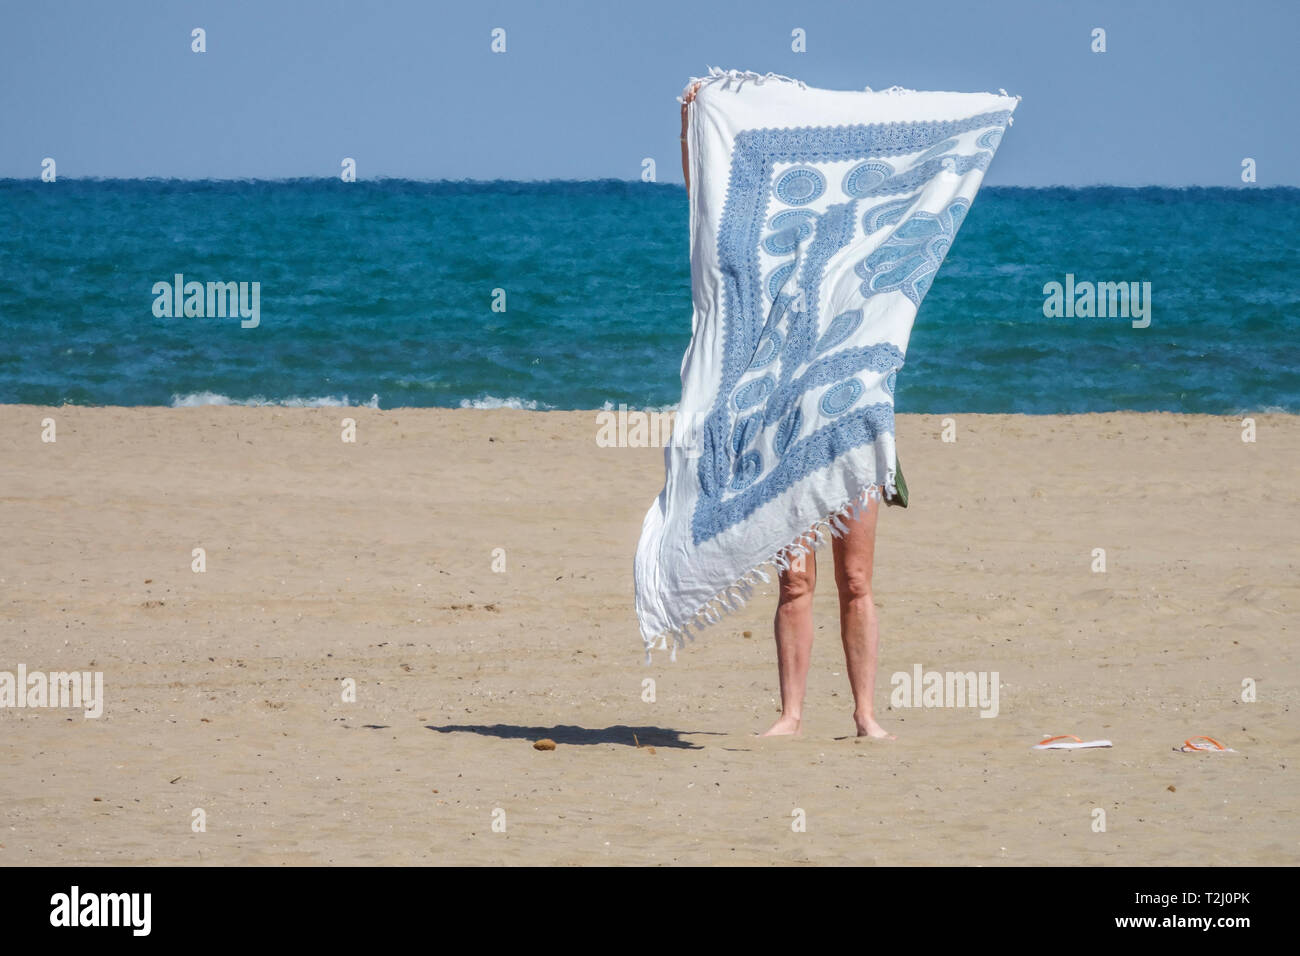 Valencia Strand Malvarrosa, einsame Frau Handtuch Strand Meer und Himmel Spanien Meerblick Frau am Strand Frau allein malerische Minimalismus versteckte Frau Stockfoto